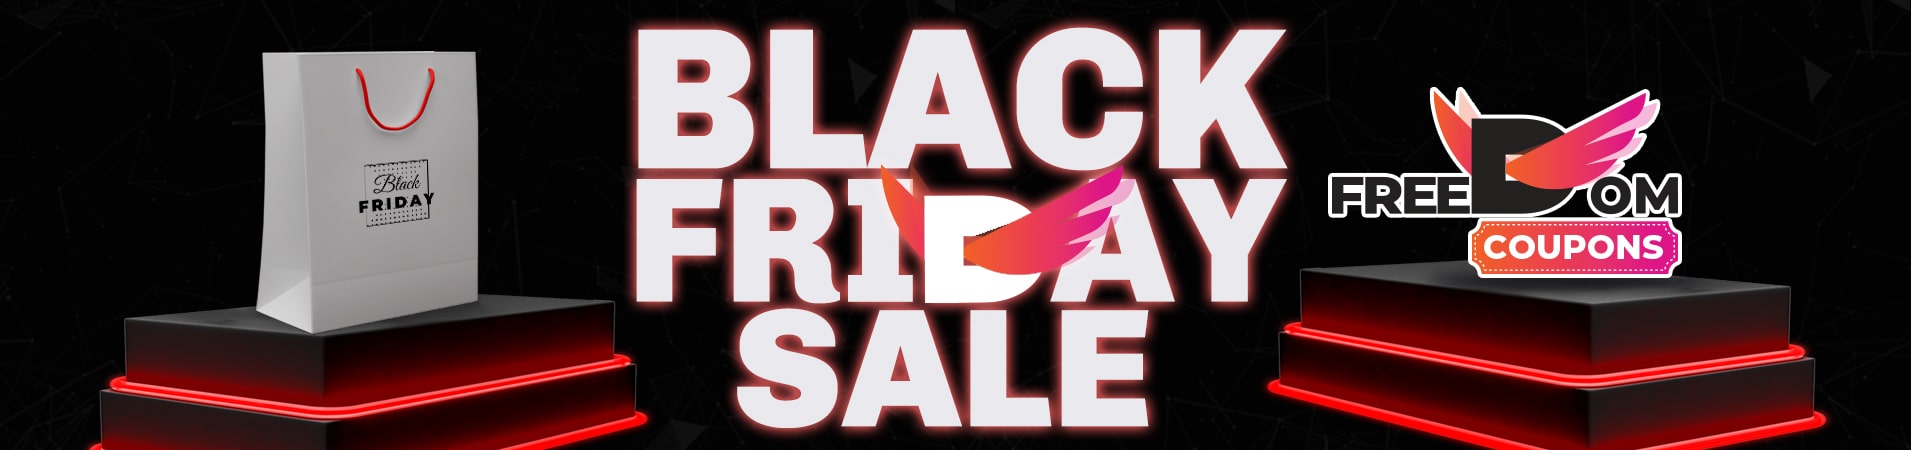 Black Friday Sale Block Image Freedomcoupons.com